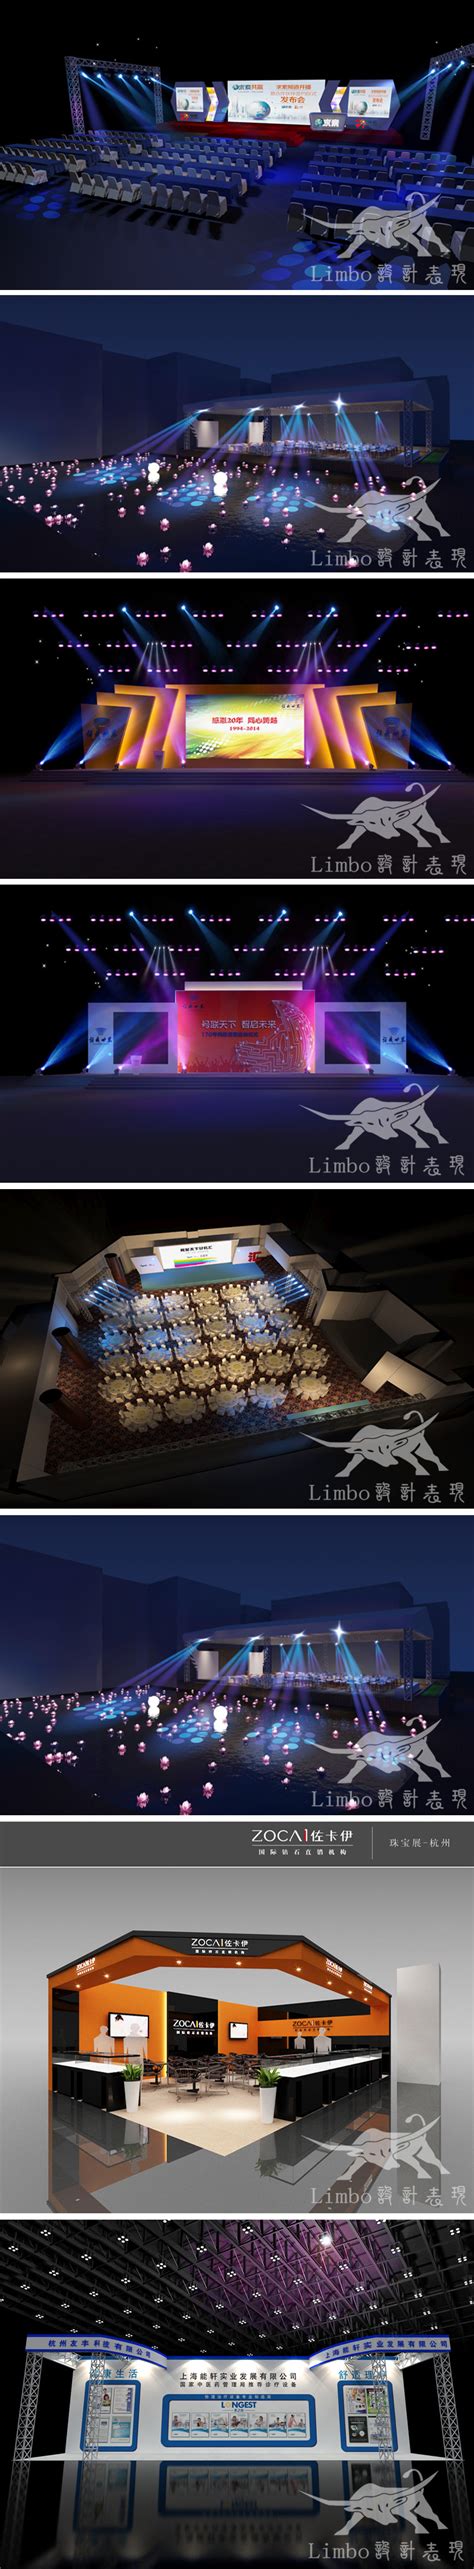 3D展会舞台室外室内设计效果图代做建模制作3dmax-公装设计-猪八戒网